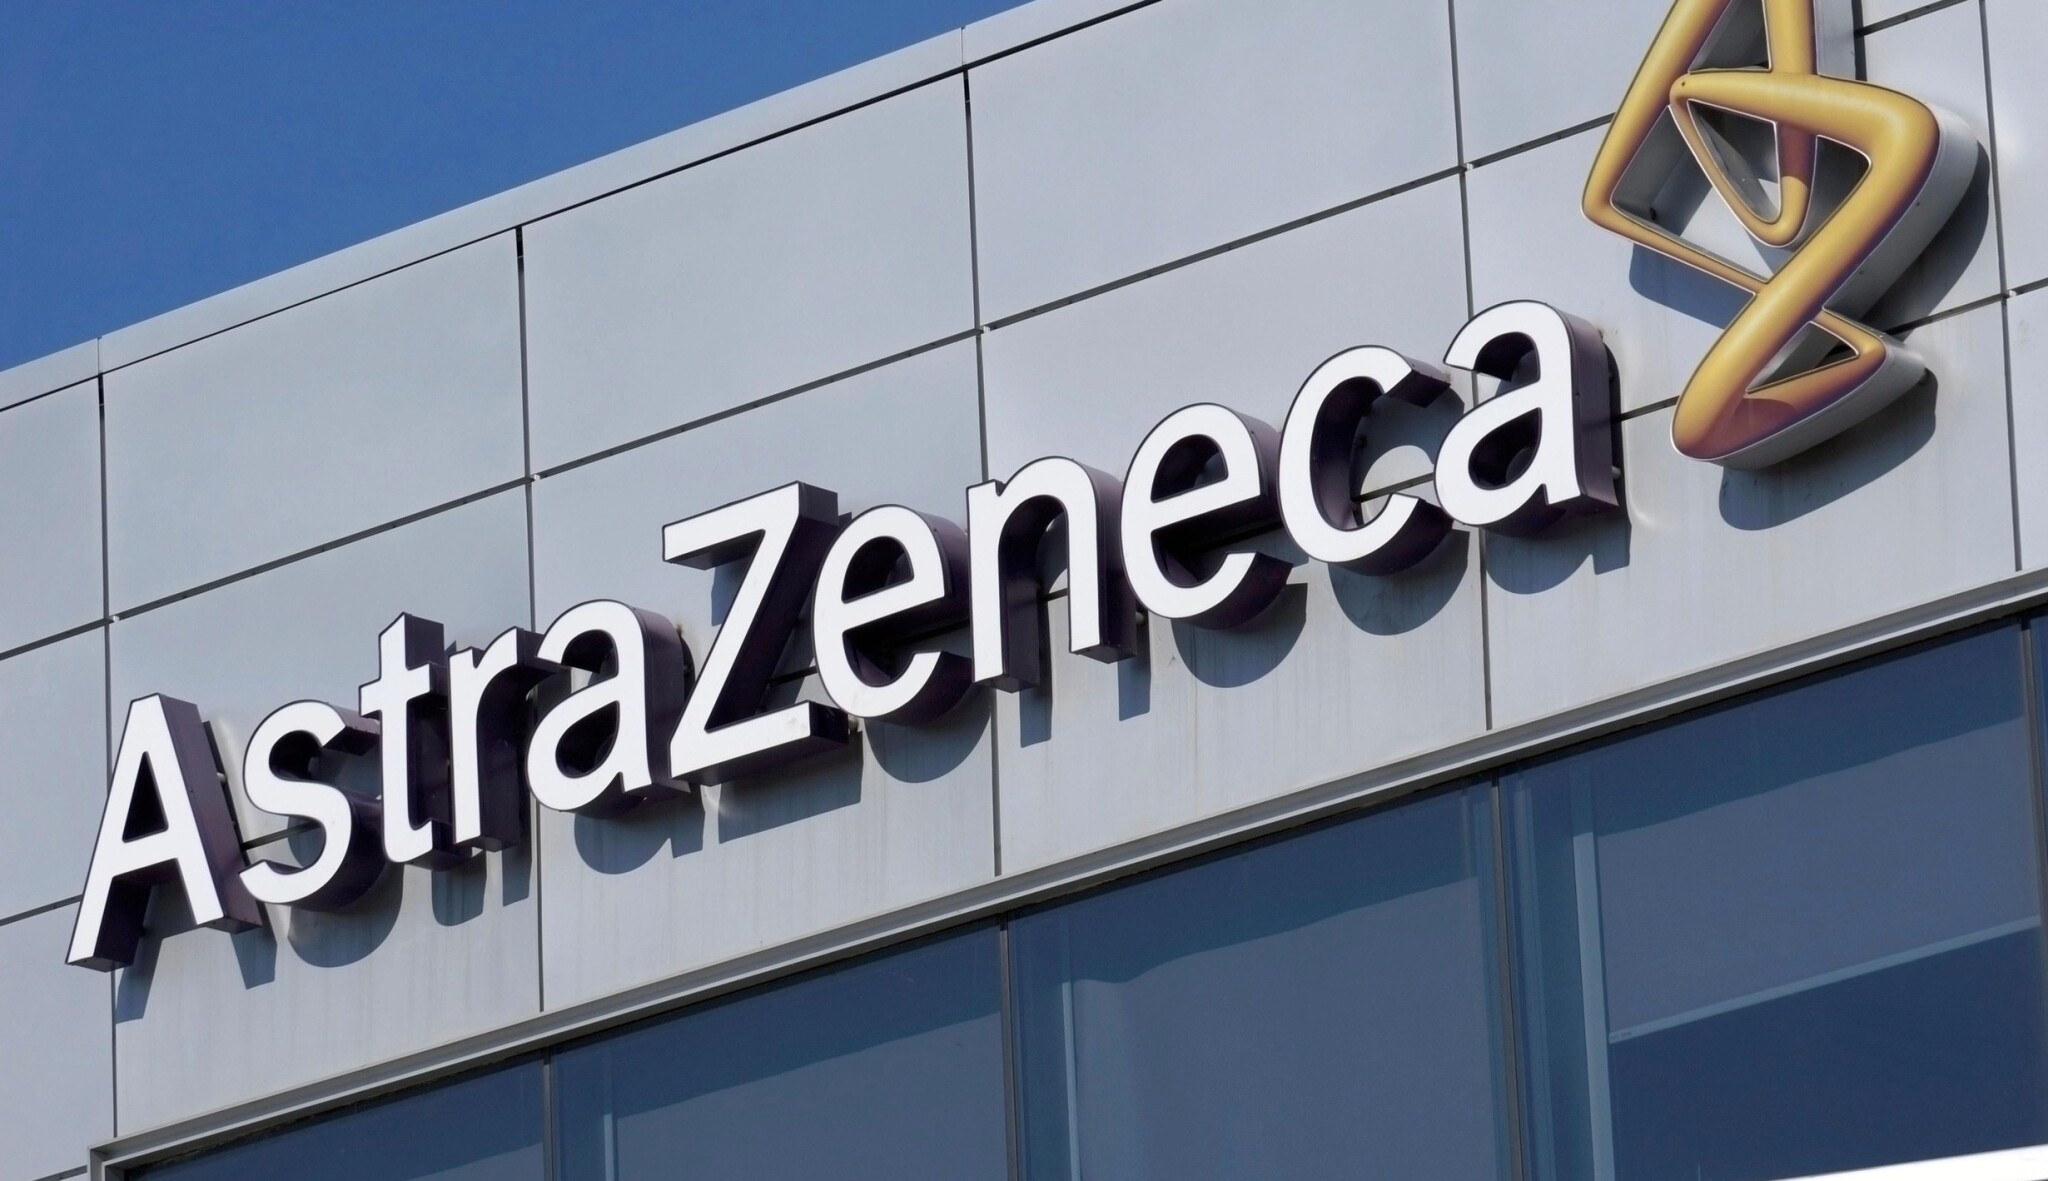 Obchod se zdravím. AstraZeneca kupuje za 39 miliard dolarů americký Alexion